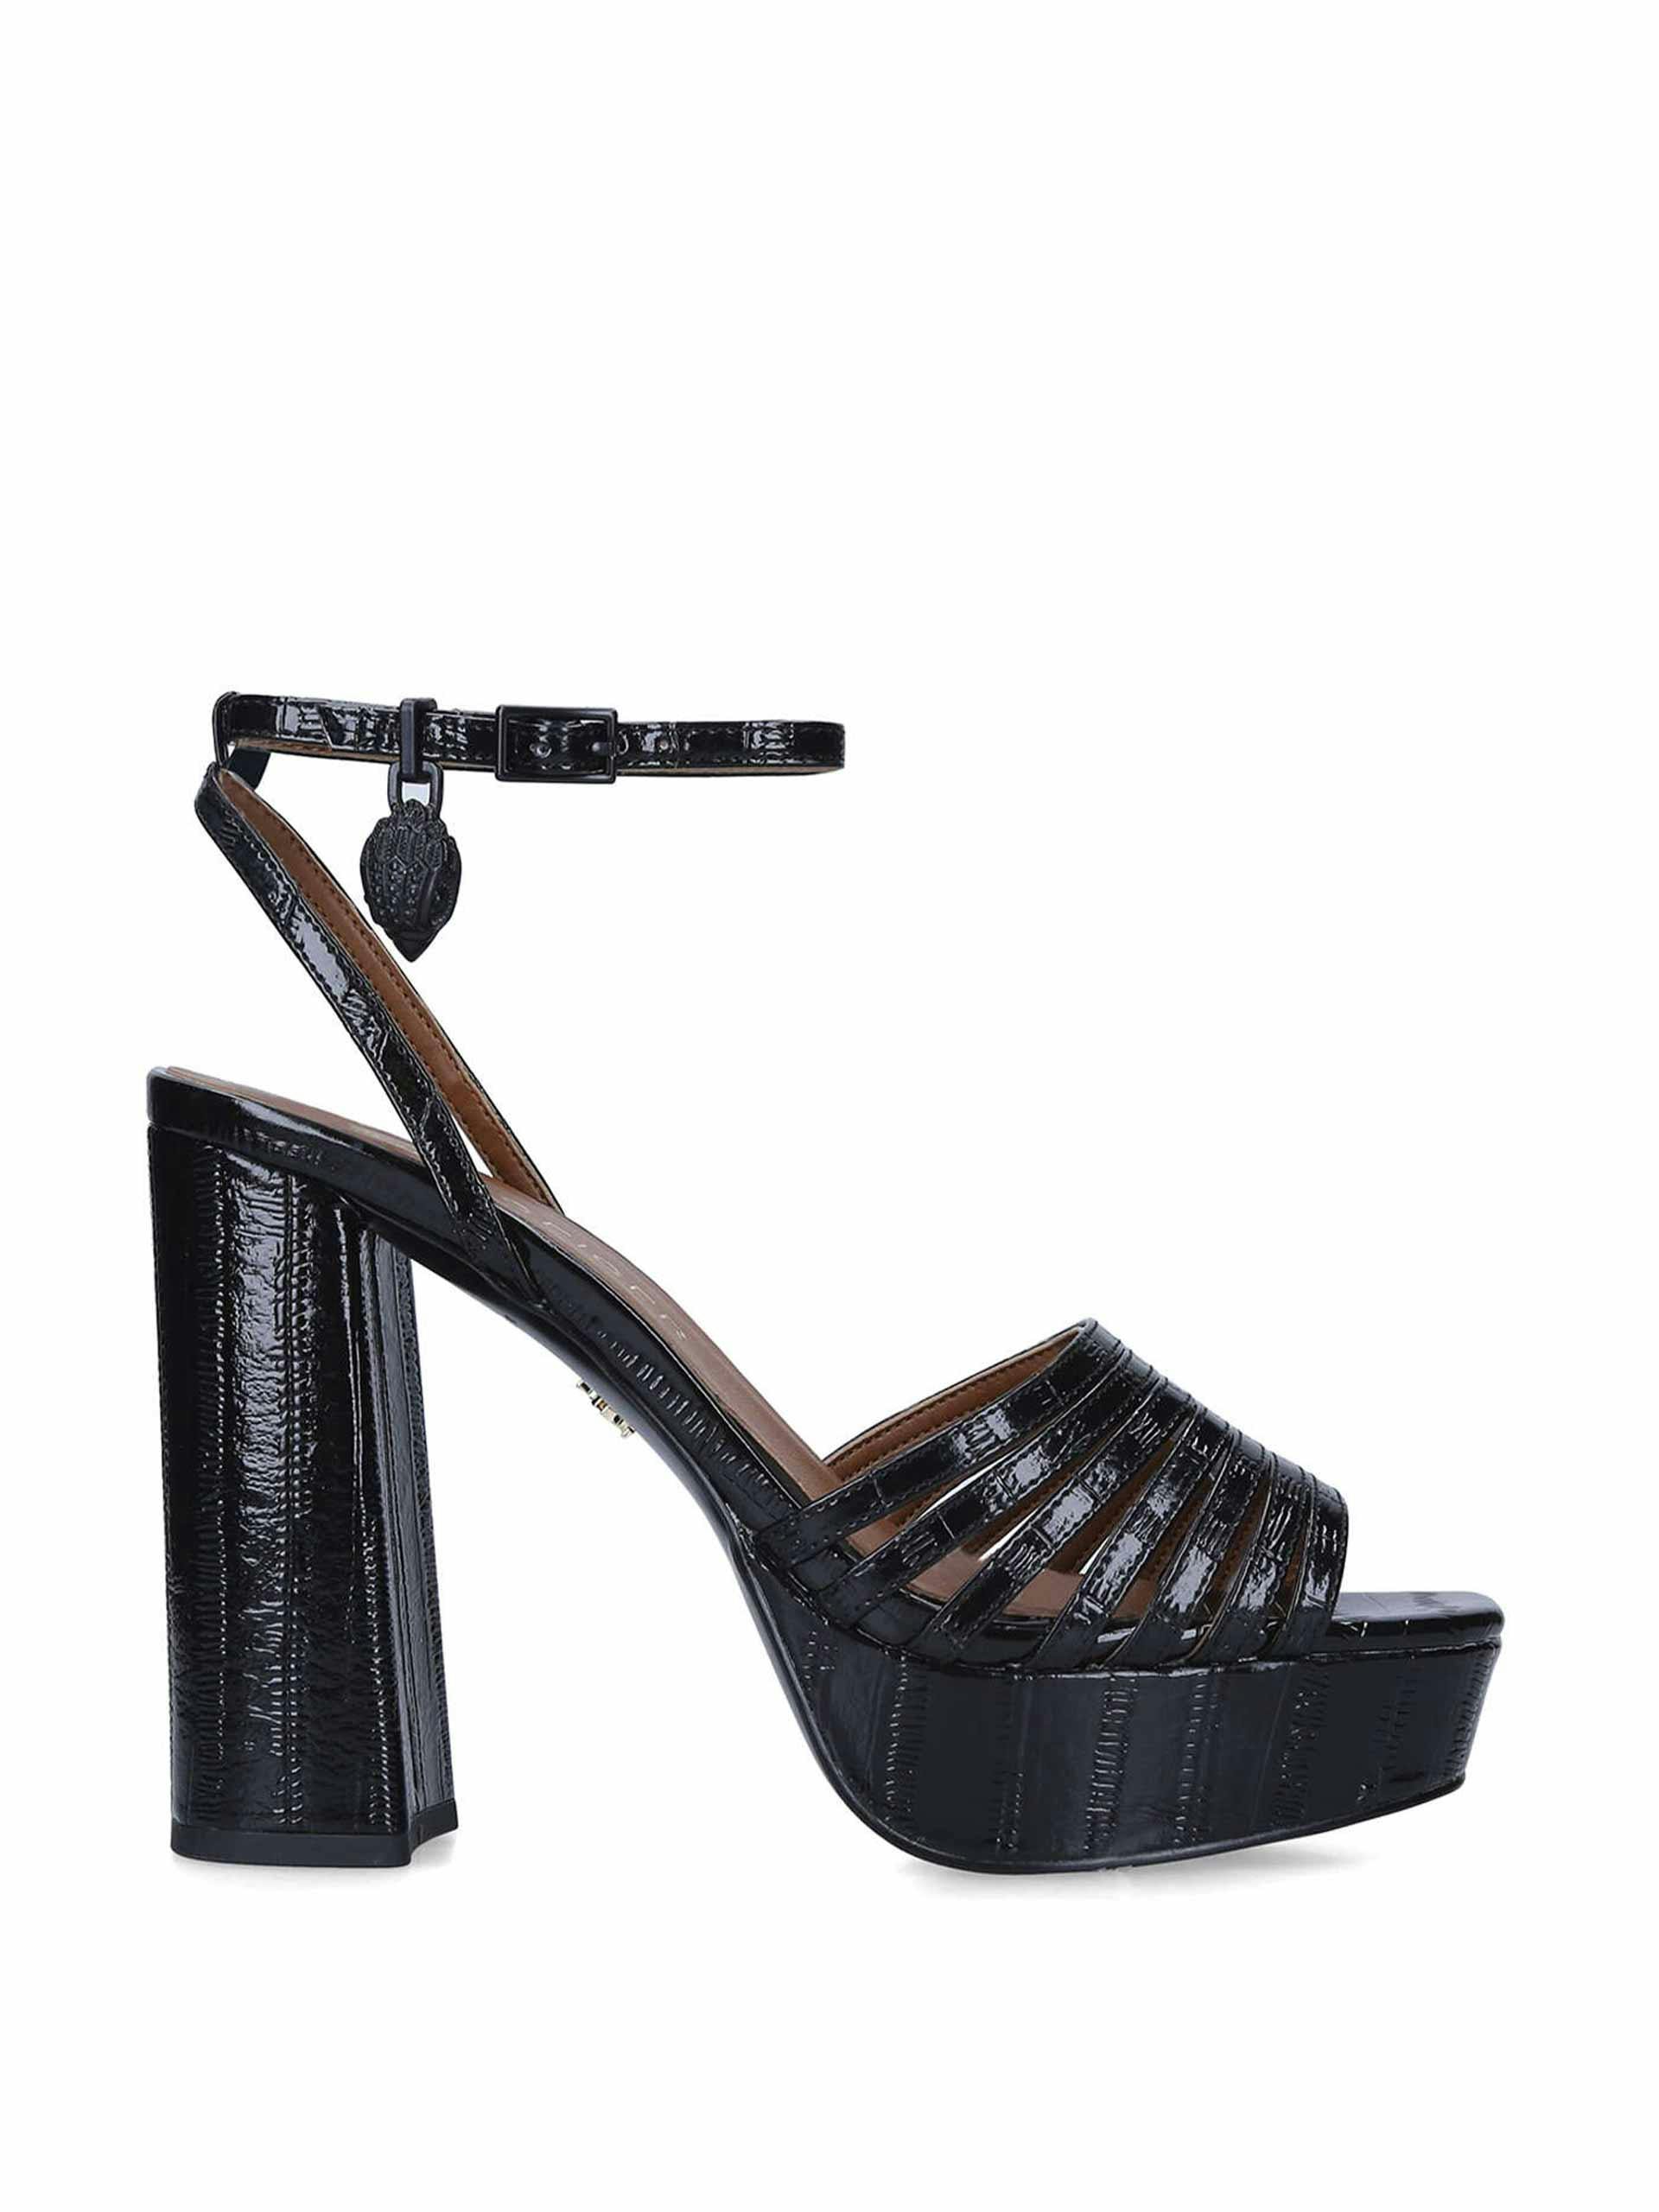 Black leather platform sandals